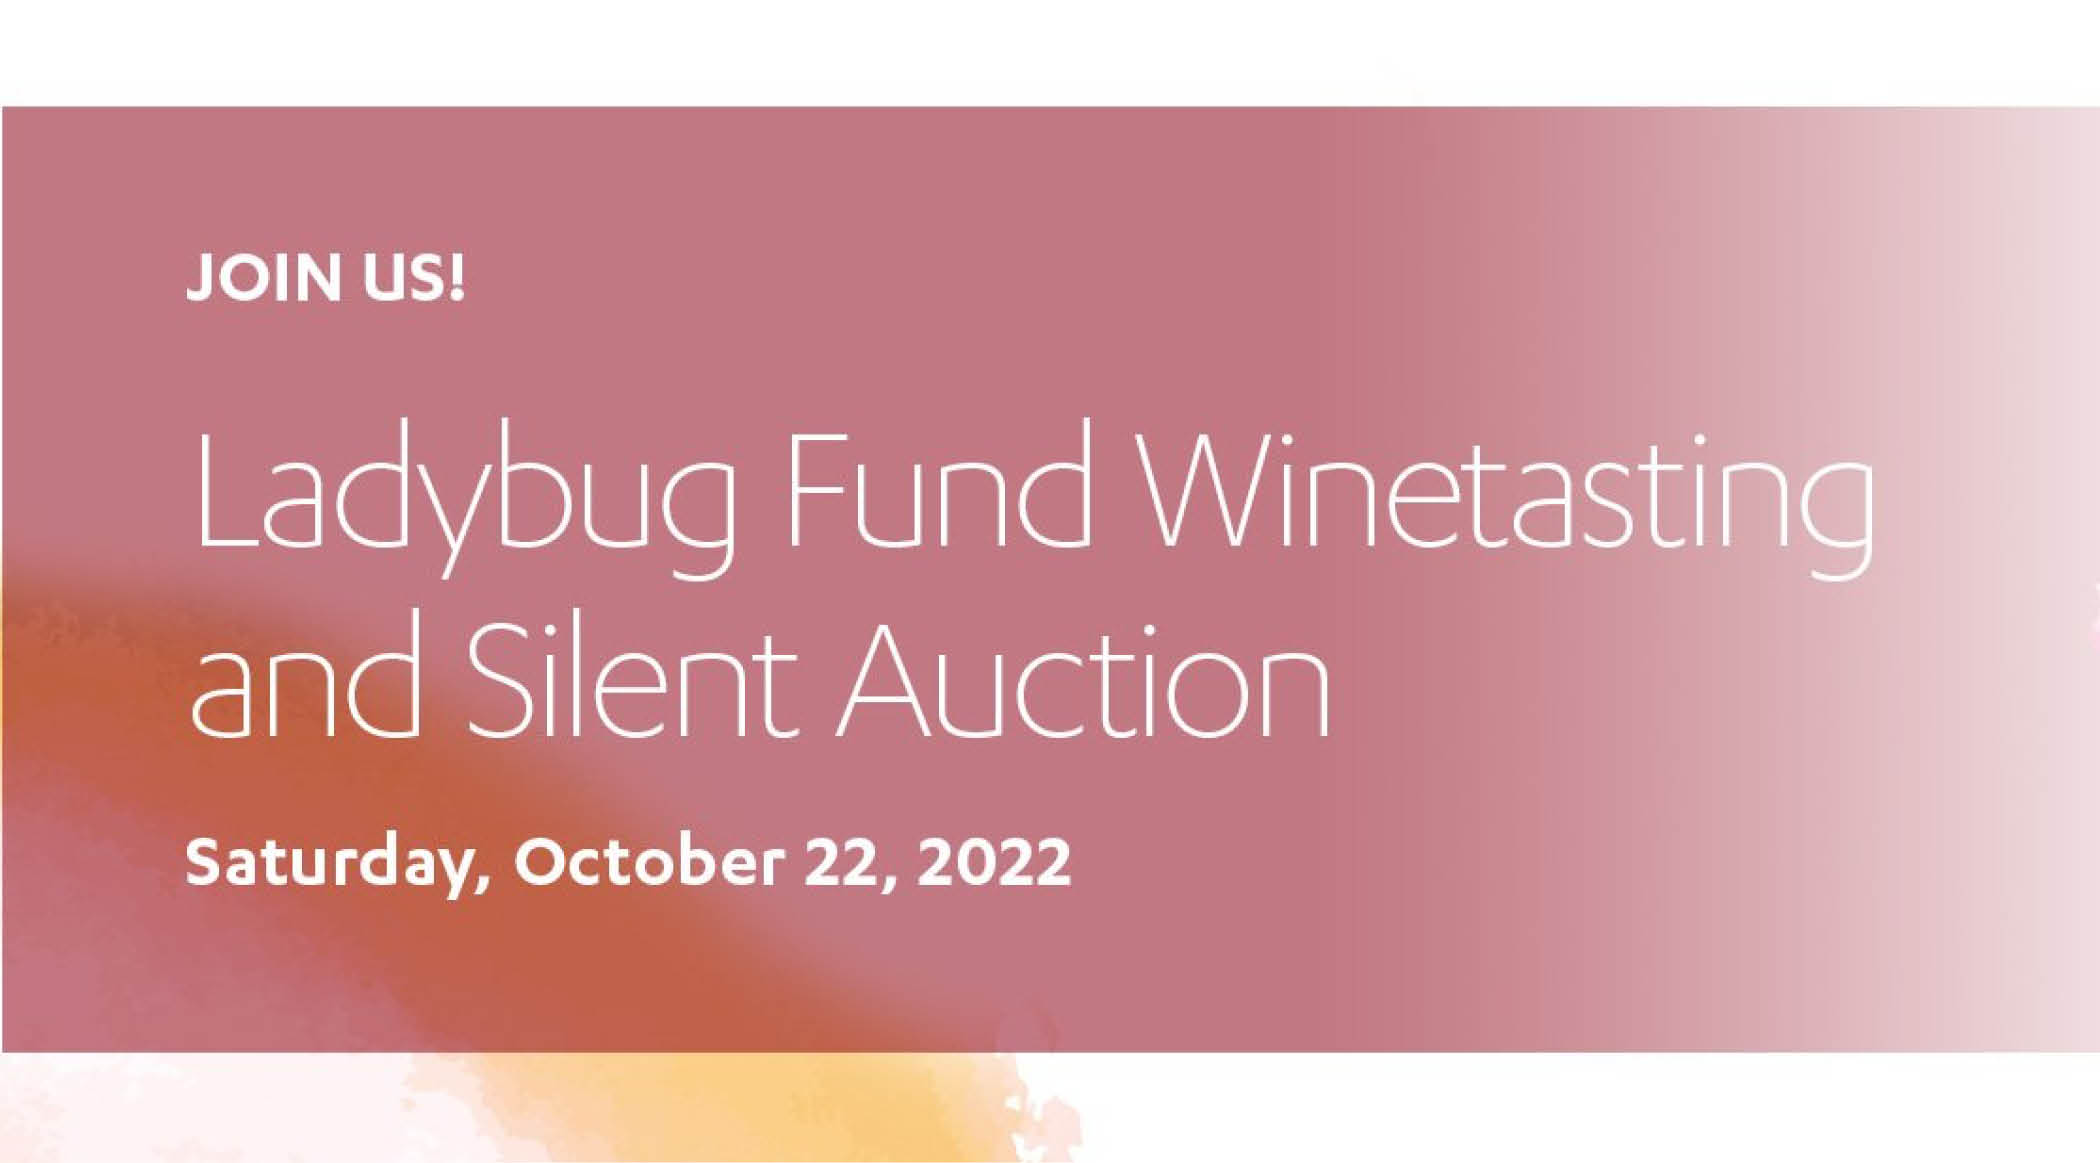 Ladybug Fund Winetasting and Silent Auction